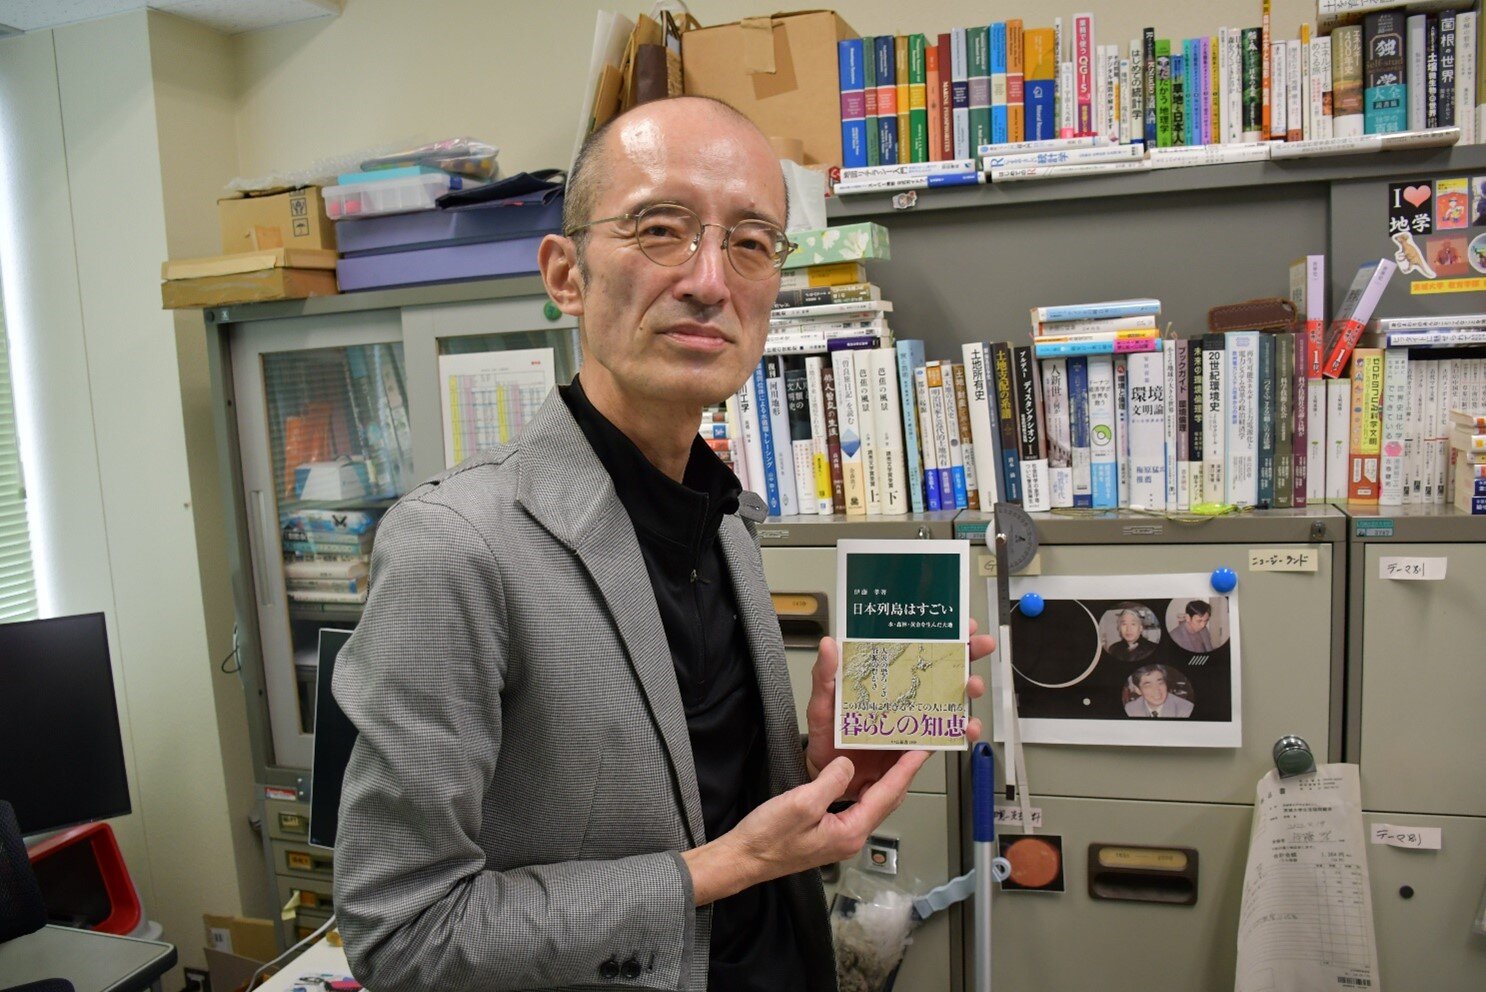 『日本列島はすごい』（中公新書）著者・伊藤孝教育学部教授にインタビュー<br>―「自分たちは、日本列島という『じゃじゃ馬』をまったく乗りこなせていない」